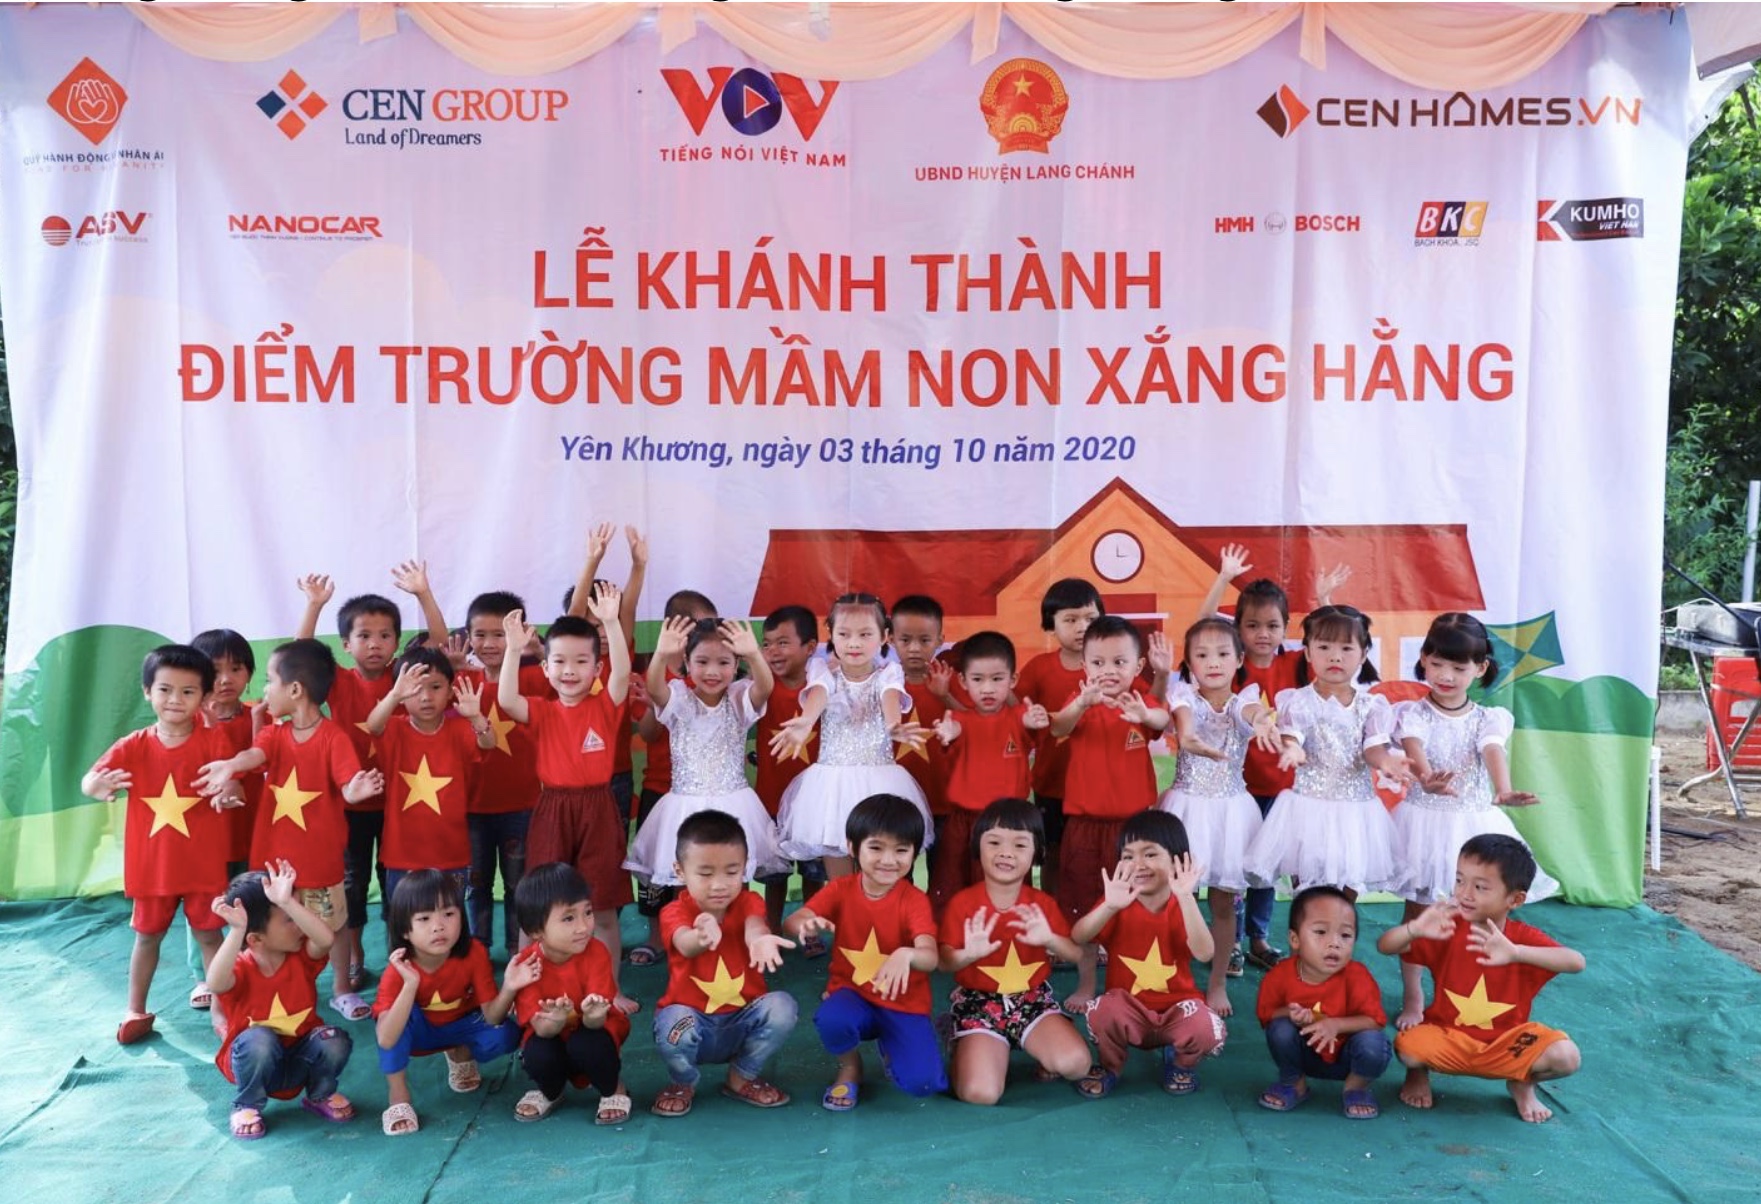 Trong ảnh là hình ảnh các em nhỏ vui cười hạnh phúc trong ngày khánh thành ngôi trường mới - Điểm trường mầm non Xắng Hằng, xã Yên Khương, huyện Lang Chánh, tỉnh Thanh Hóa.